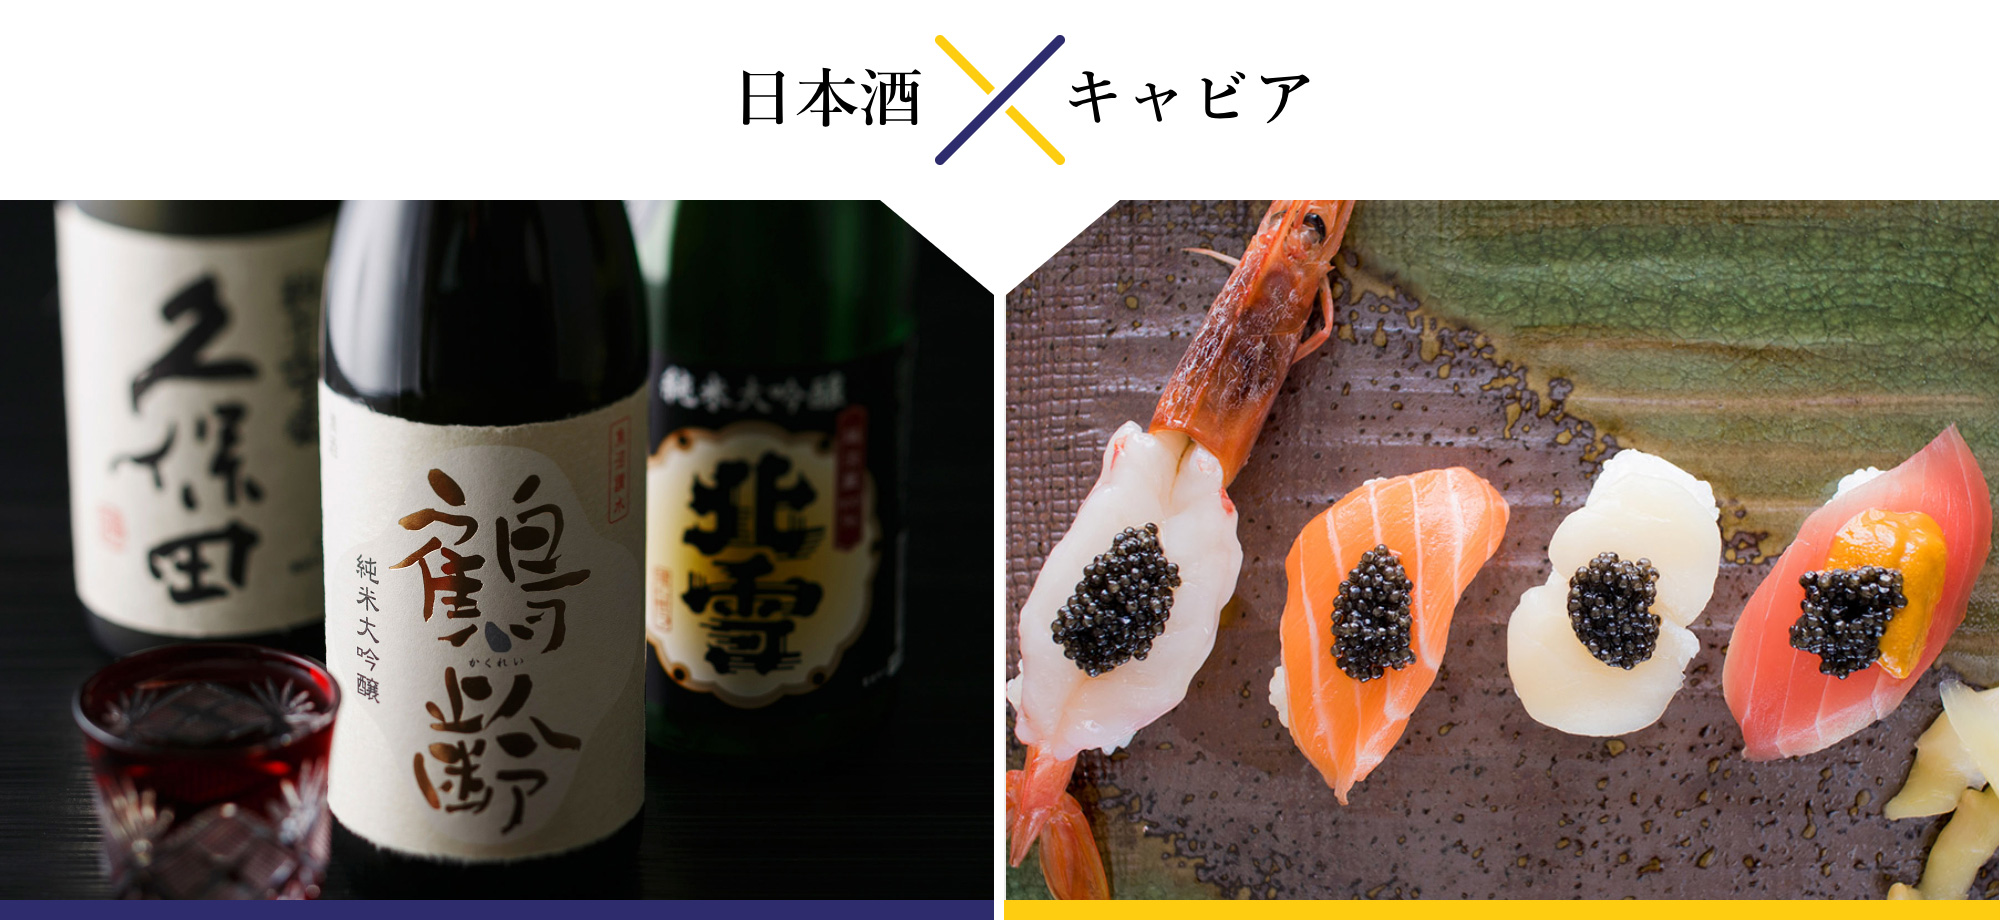 日本酒とキャビアのペアリング